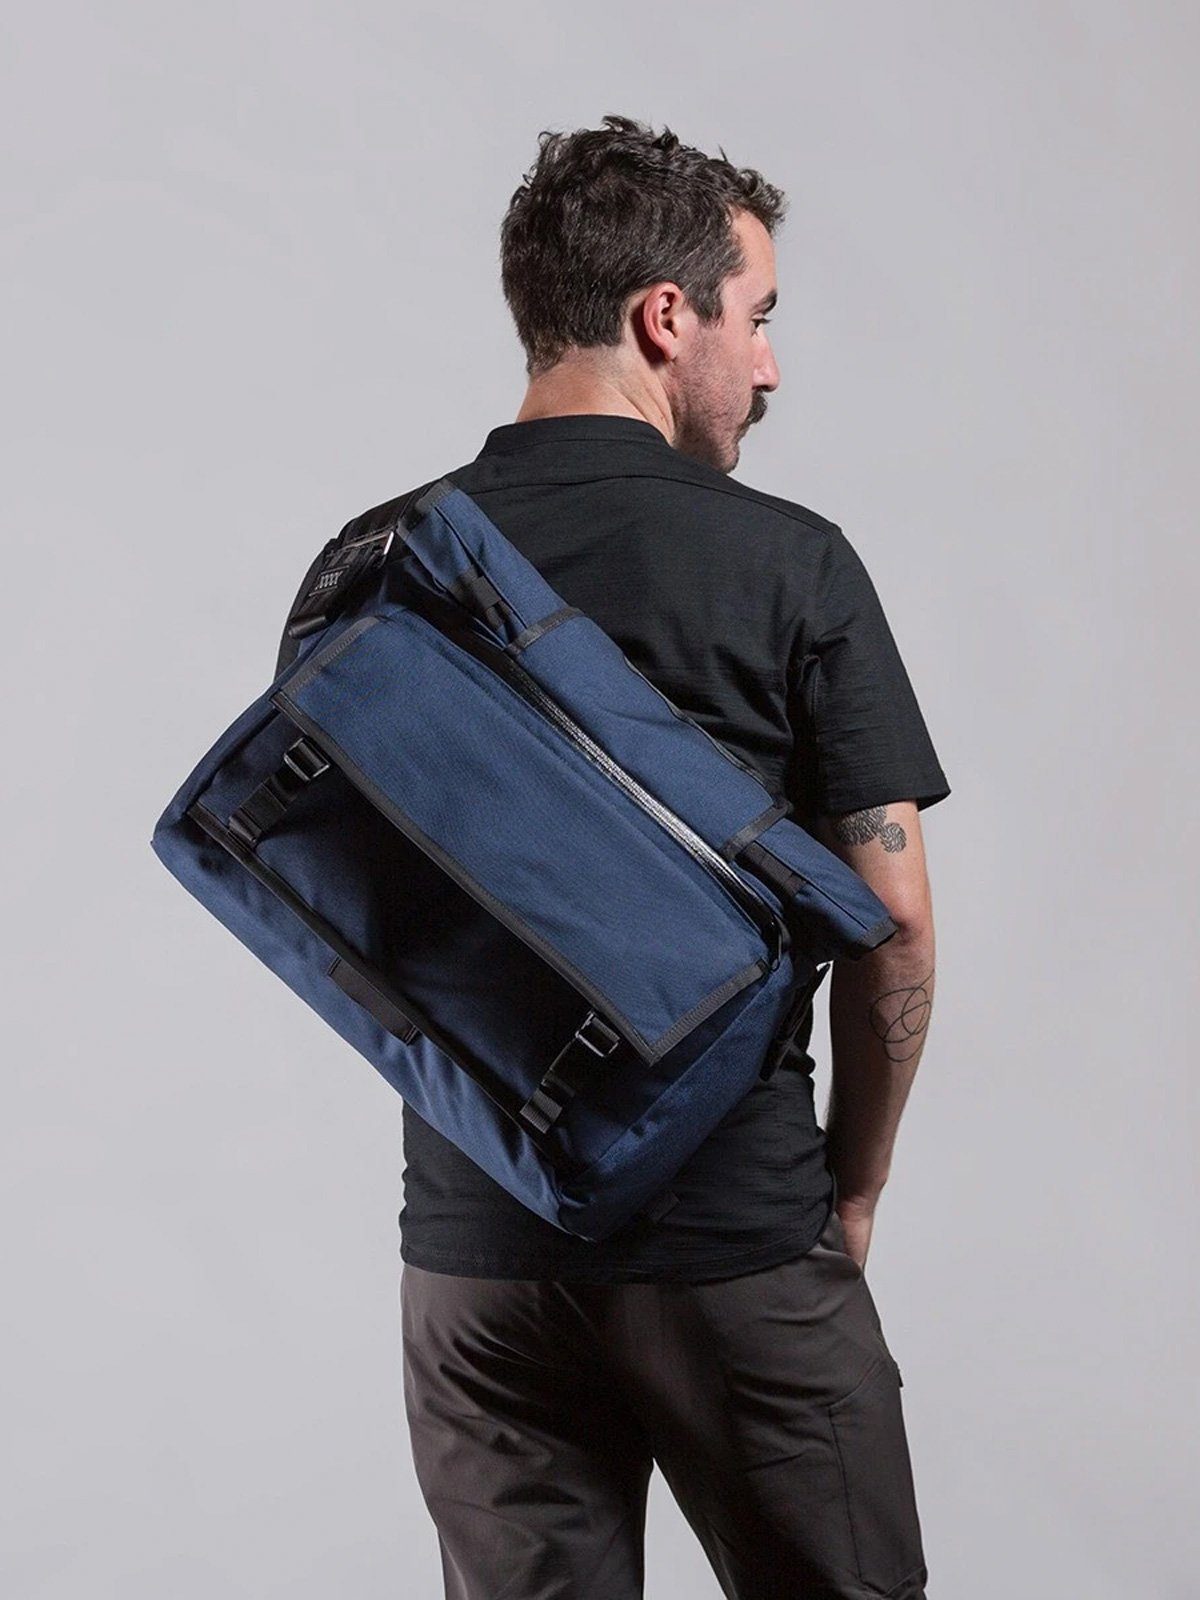 Rummy by Mission Workshop - Weatherproof Bags & Technical Apparel - San Francisco & Los Angeles - Construit pour durer - Garanti pour toujours